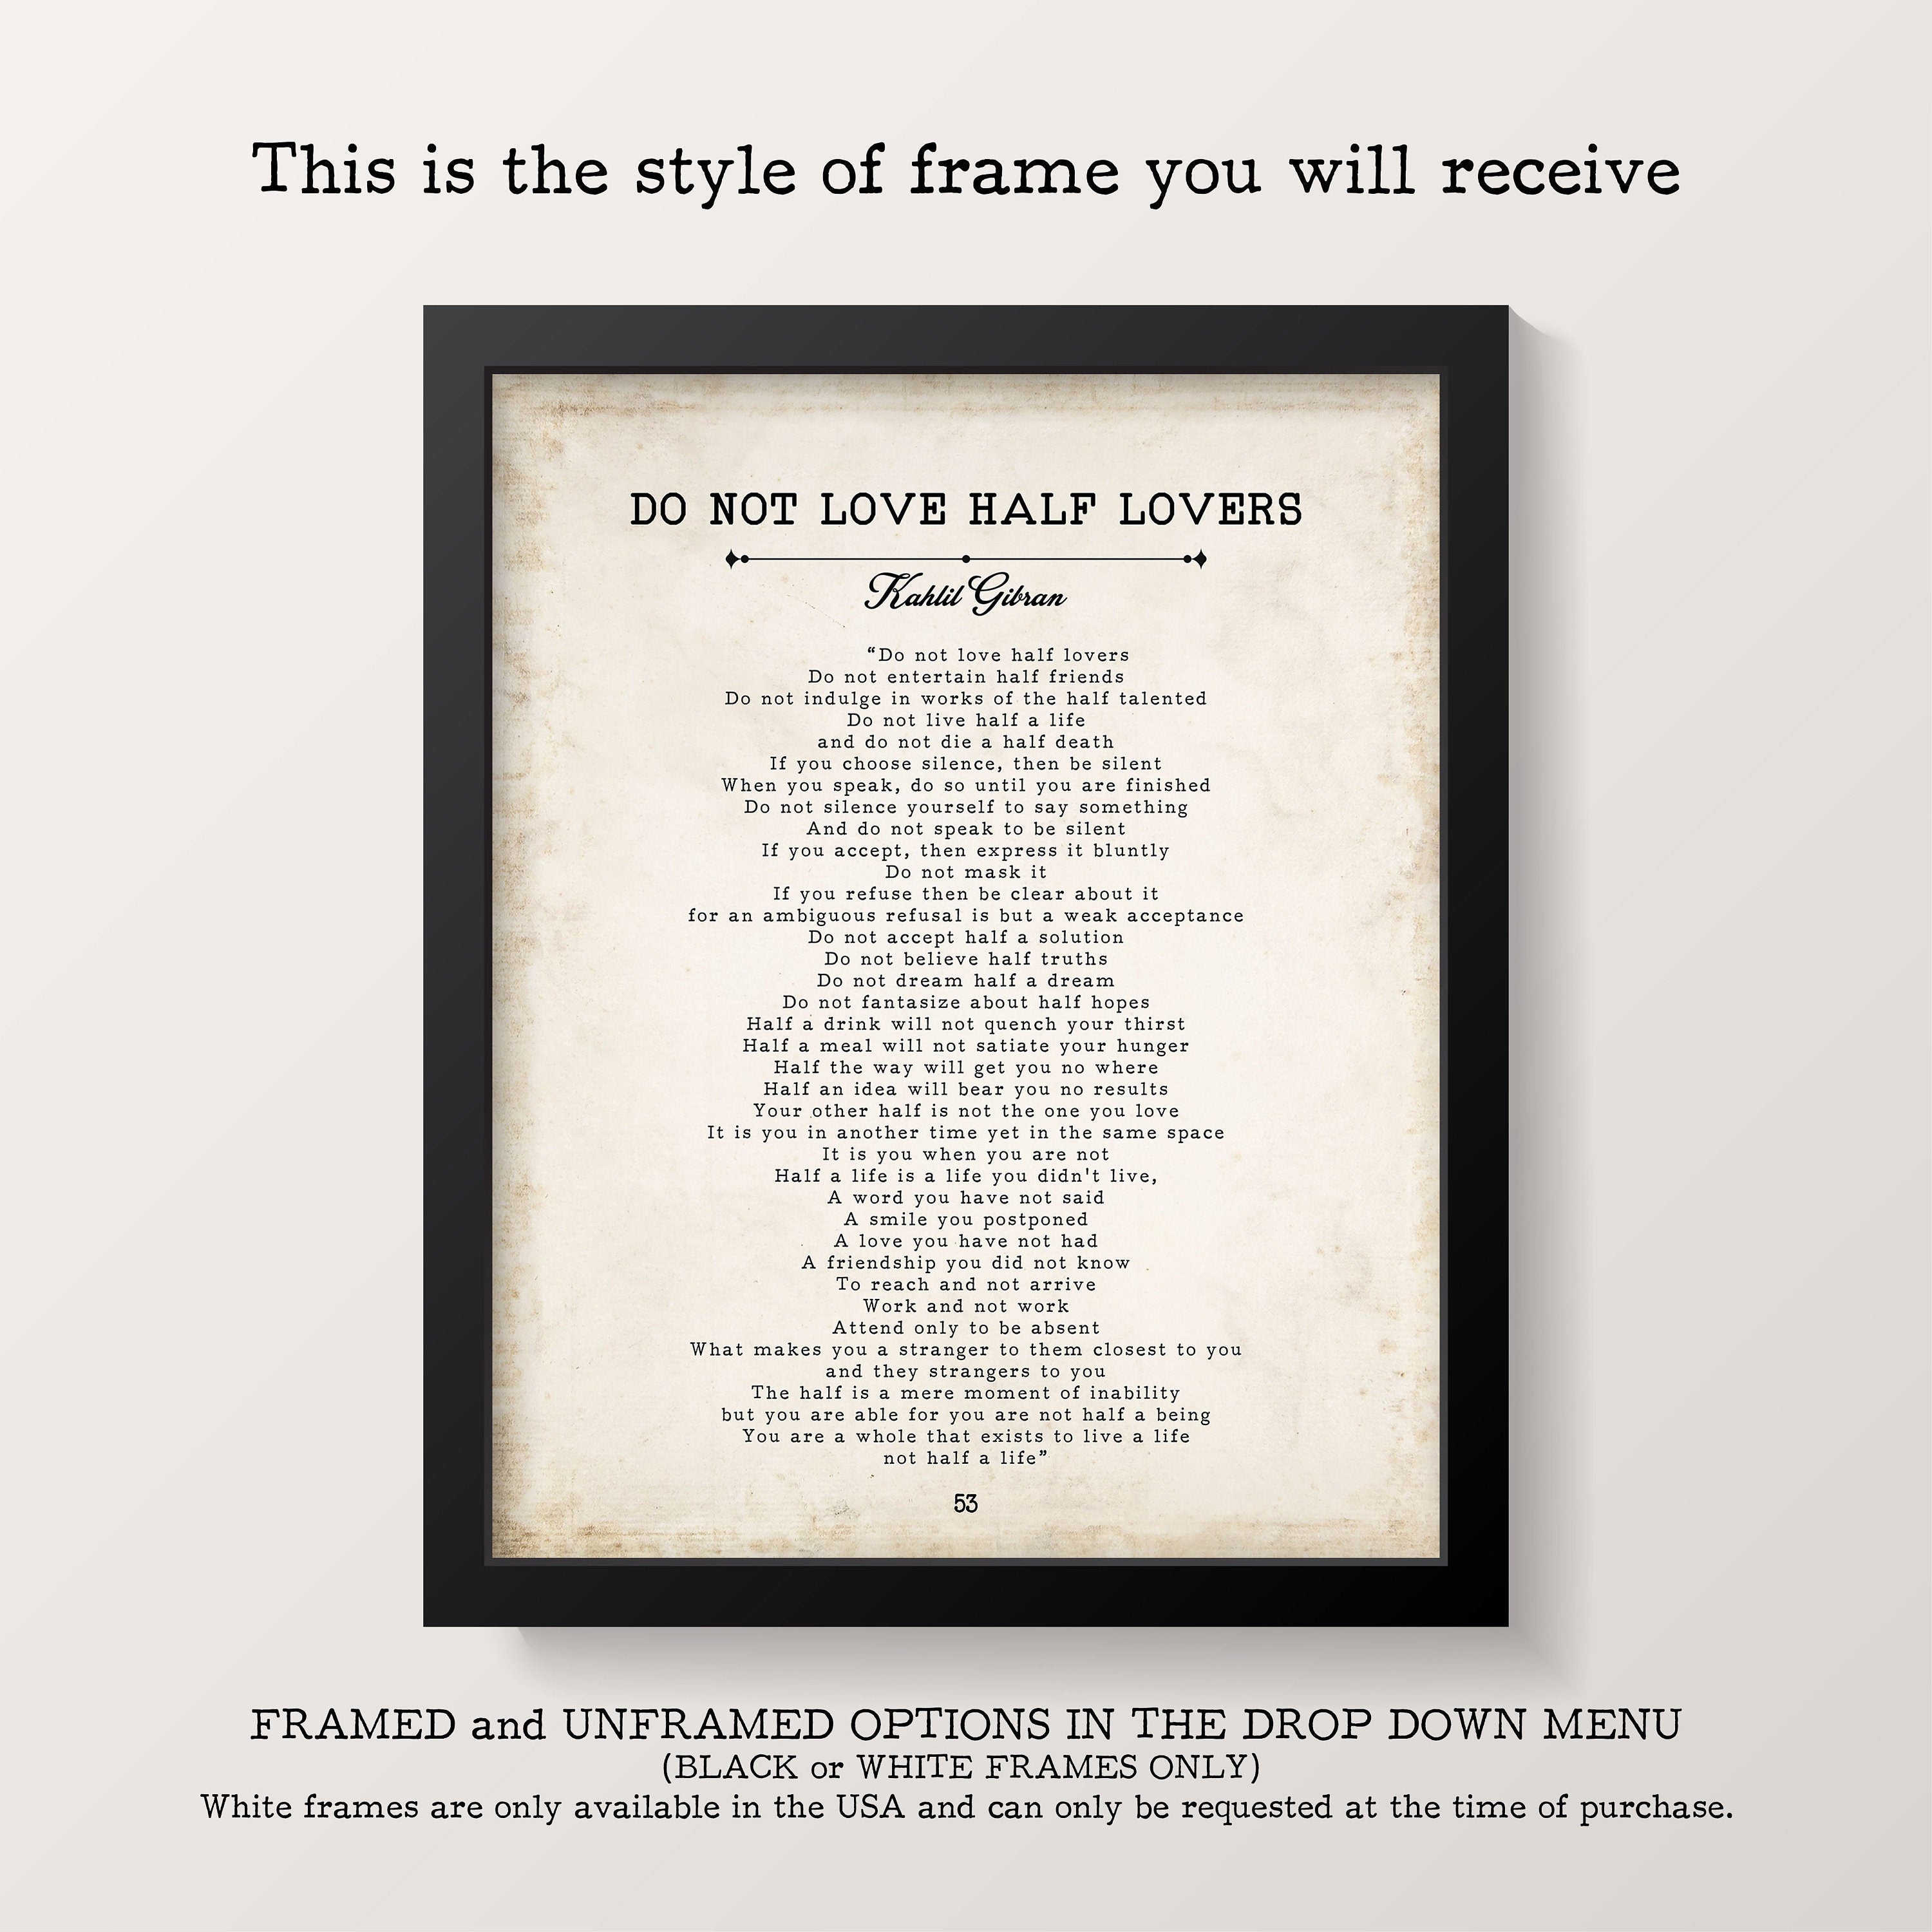 Do Not Love Half Lovers Kahlil Gibran Poem - Art Print Home office